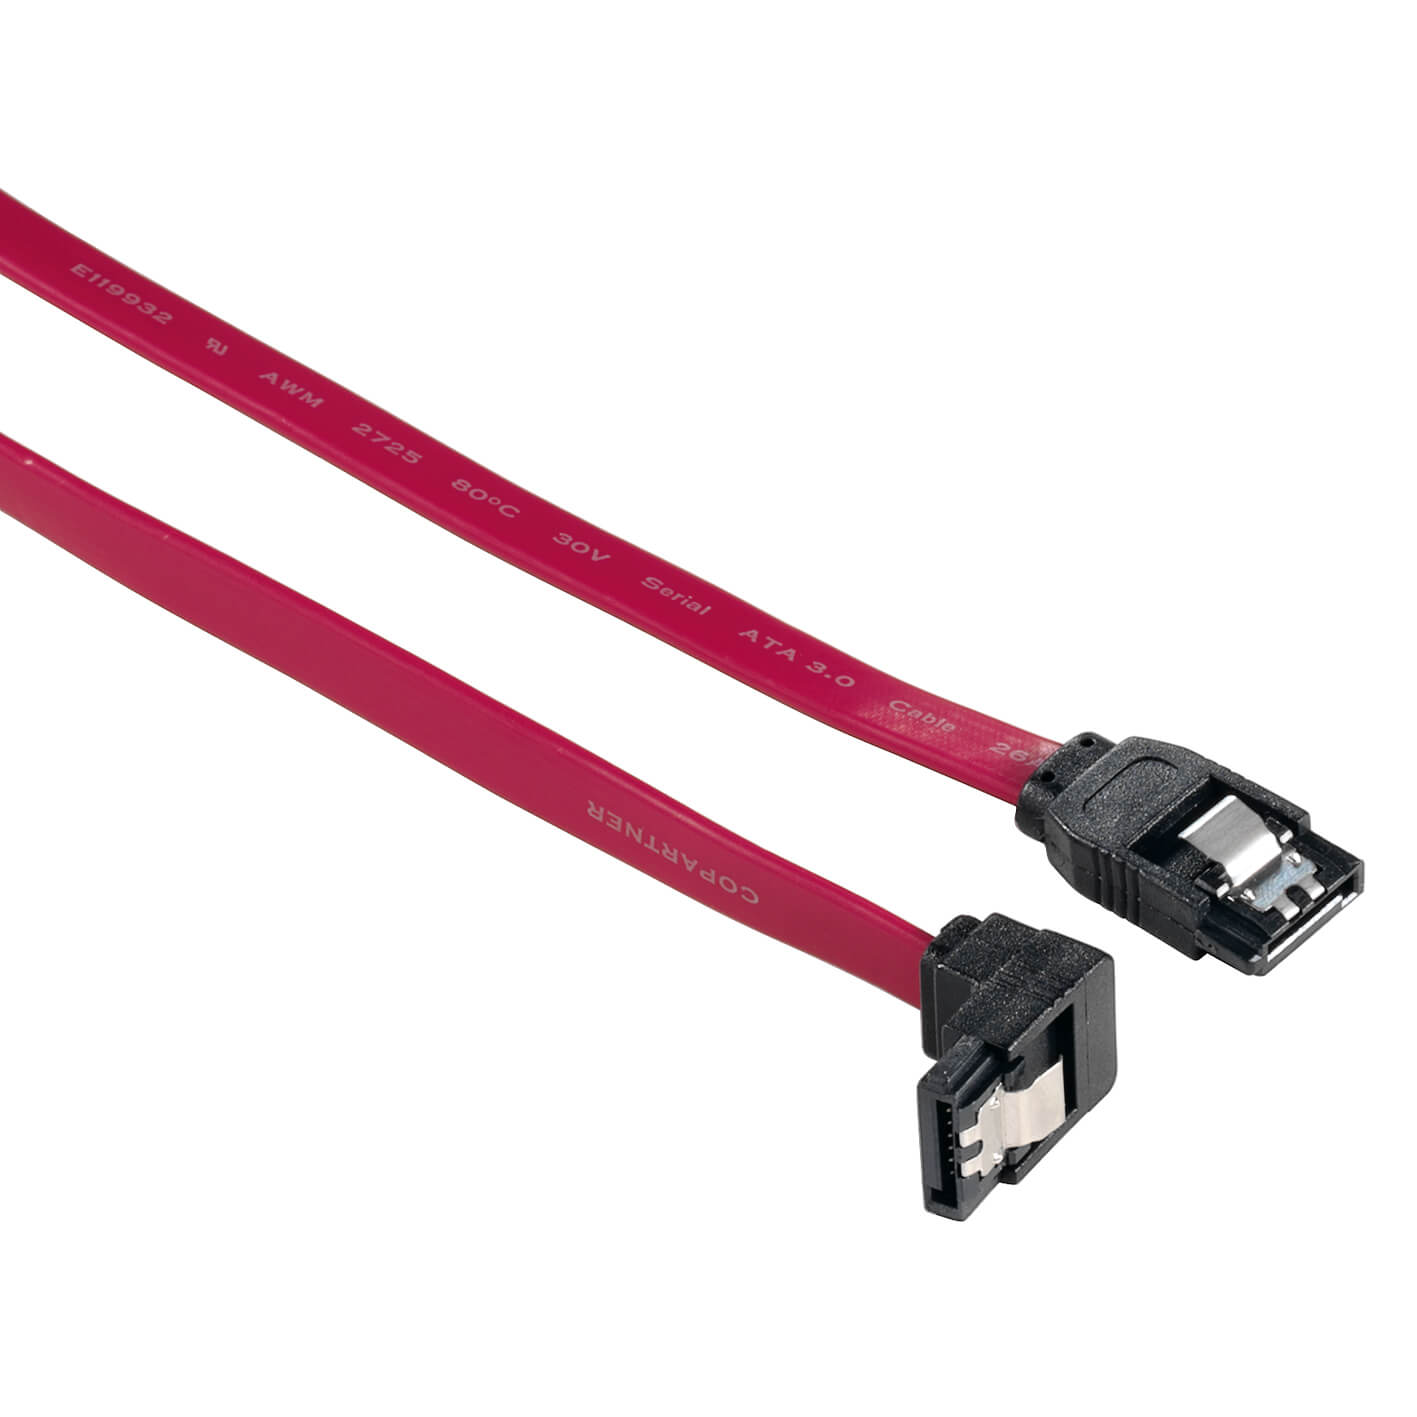 SATA III Data Cable, internal , angle plug, 0.60 m